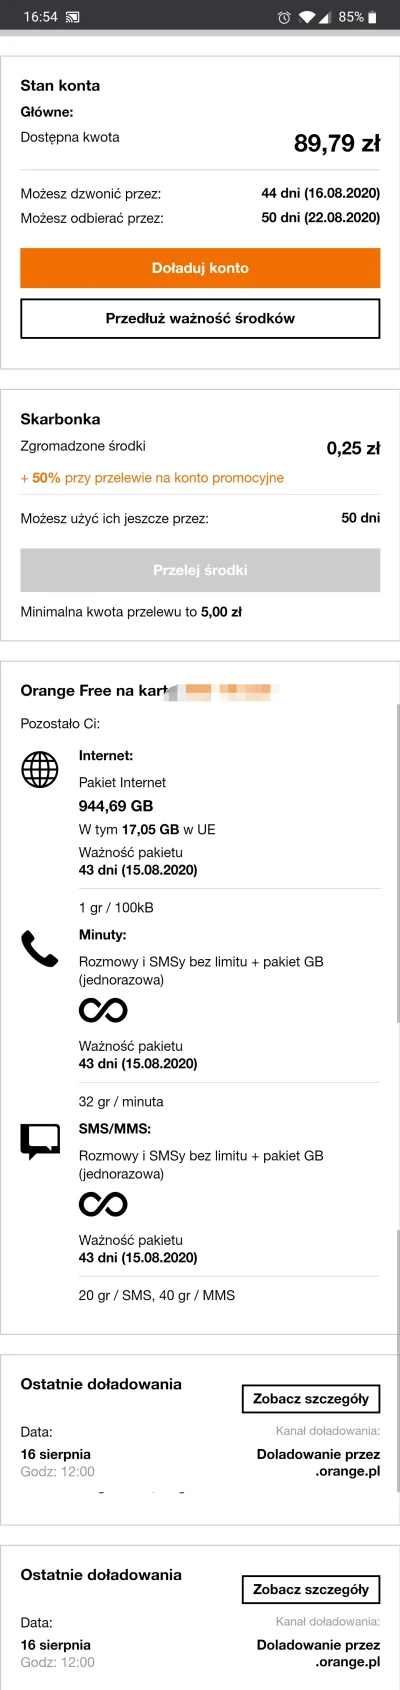 L.....4 - #orange

Jak kliknę przedłuż ważność środków jest opcja na rok za 29 zł. ...